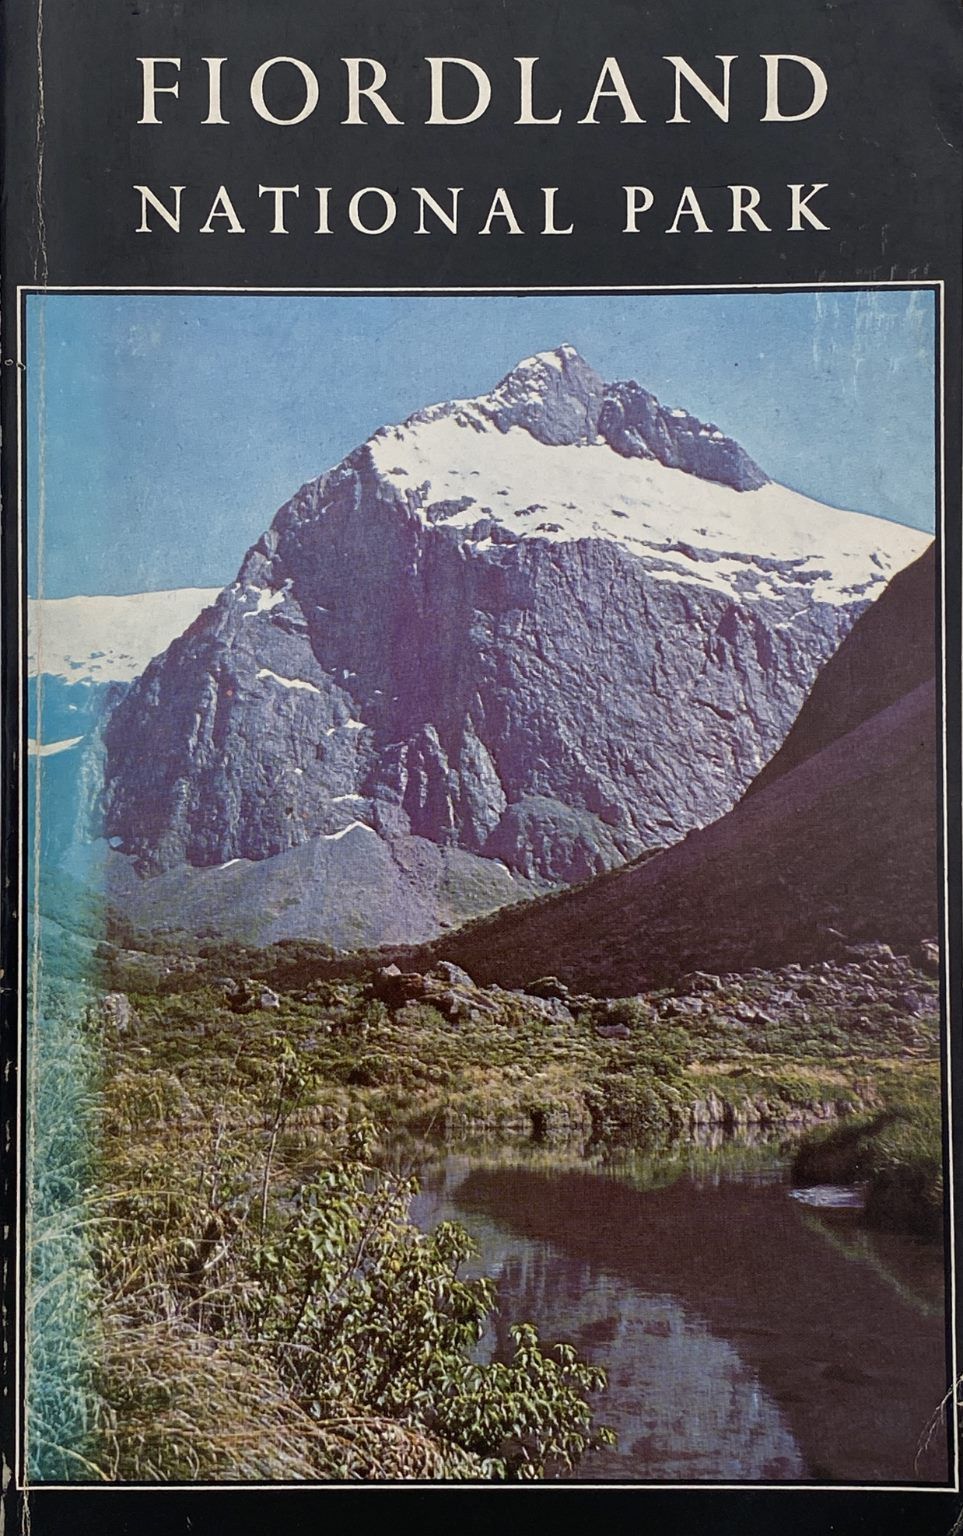 FIORDLAND NATIONAL PARK: Handbook 1965